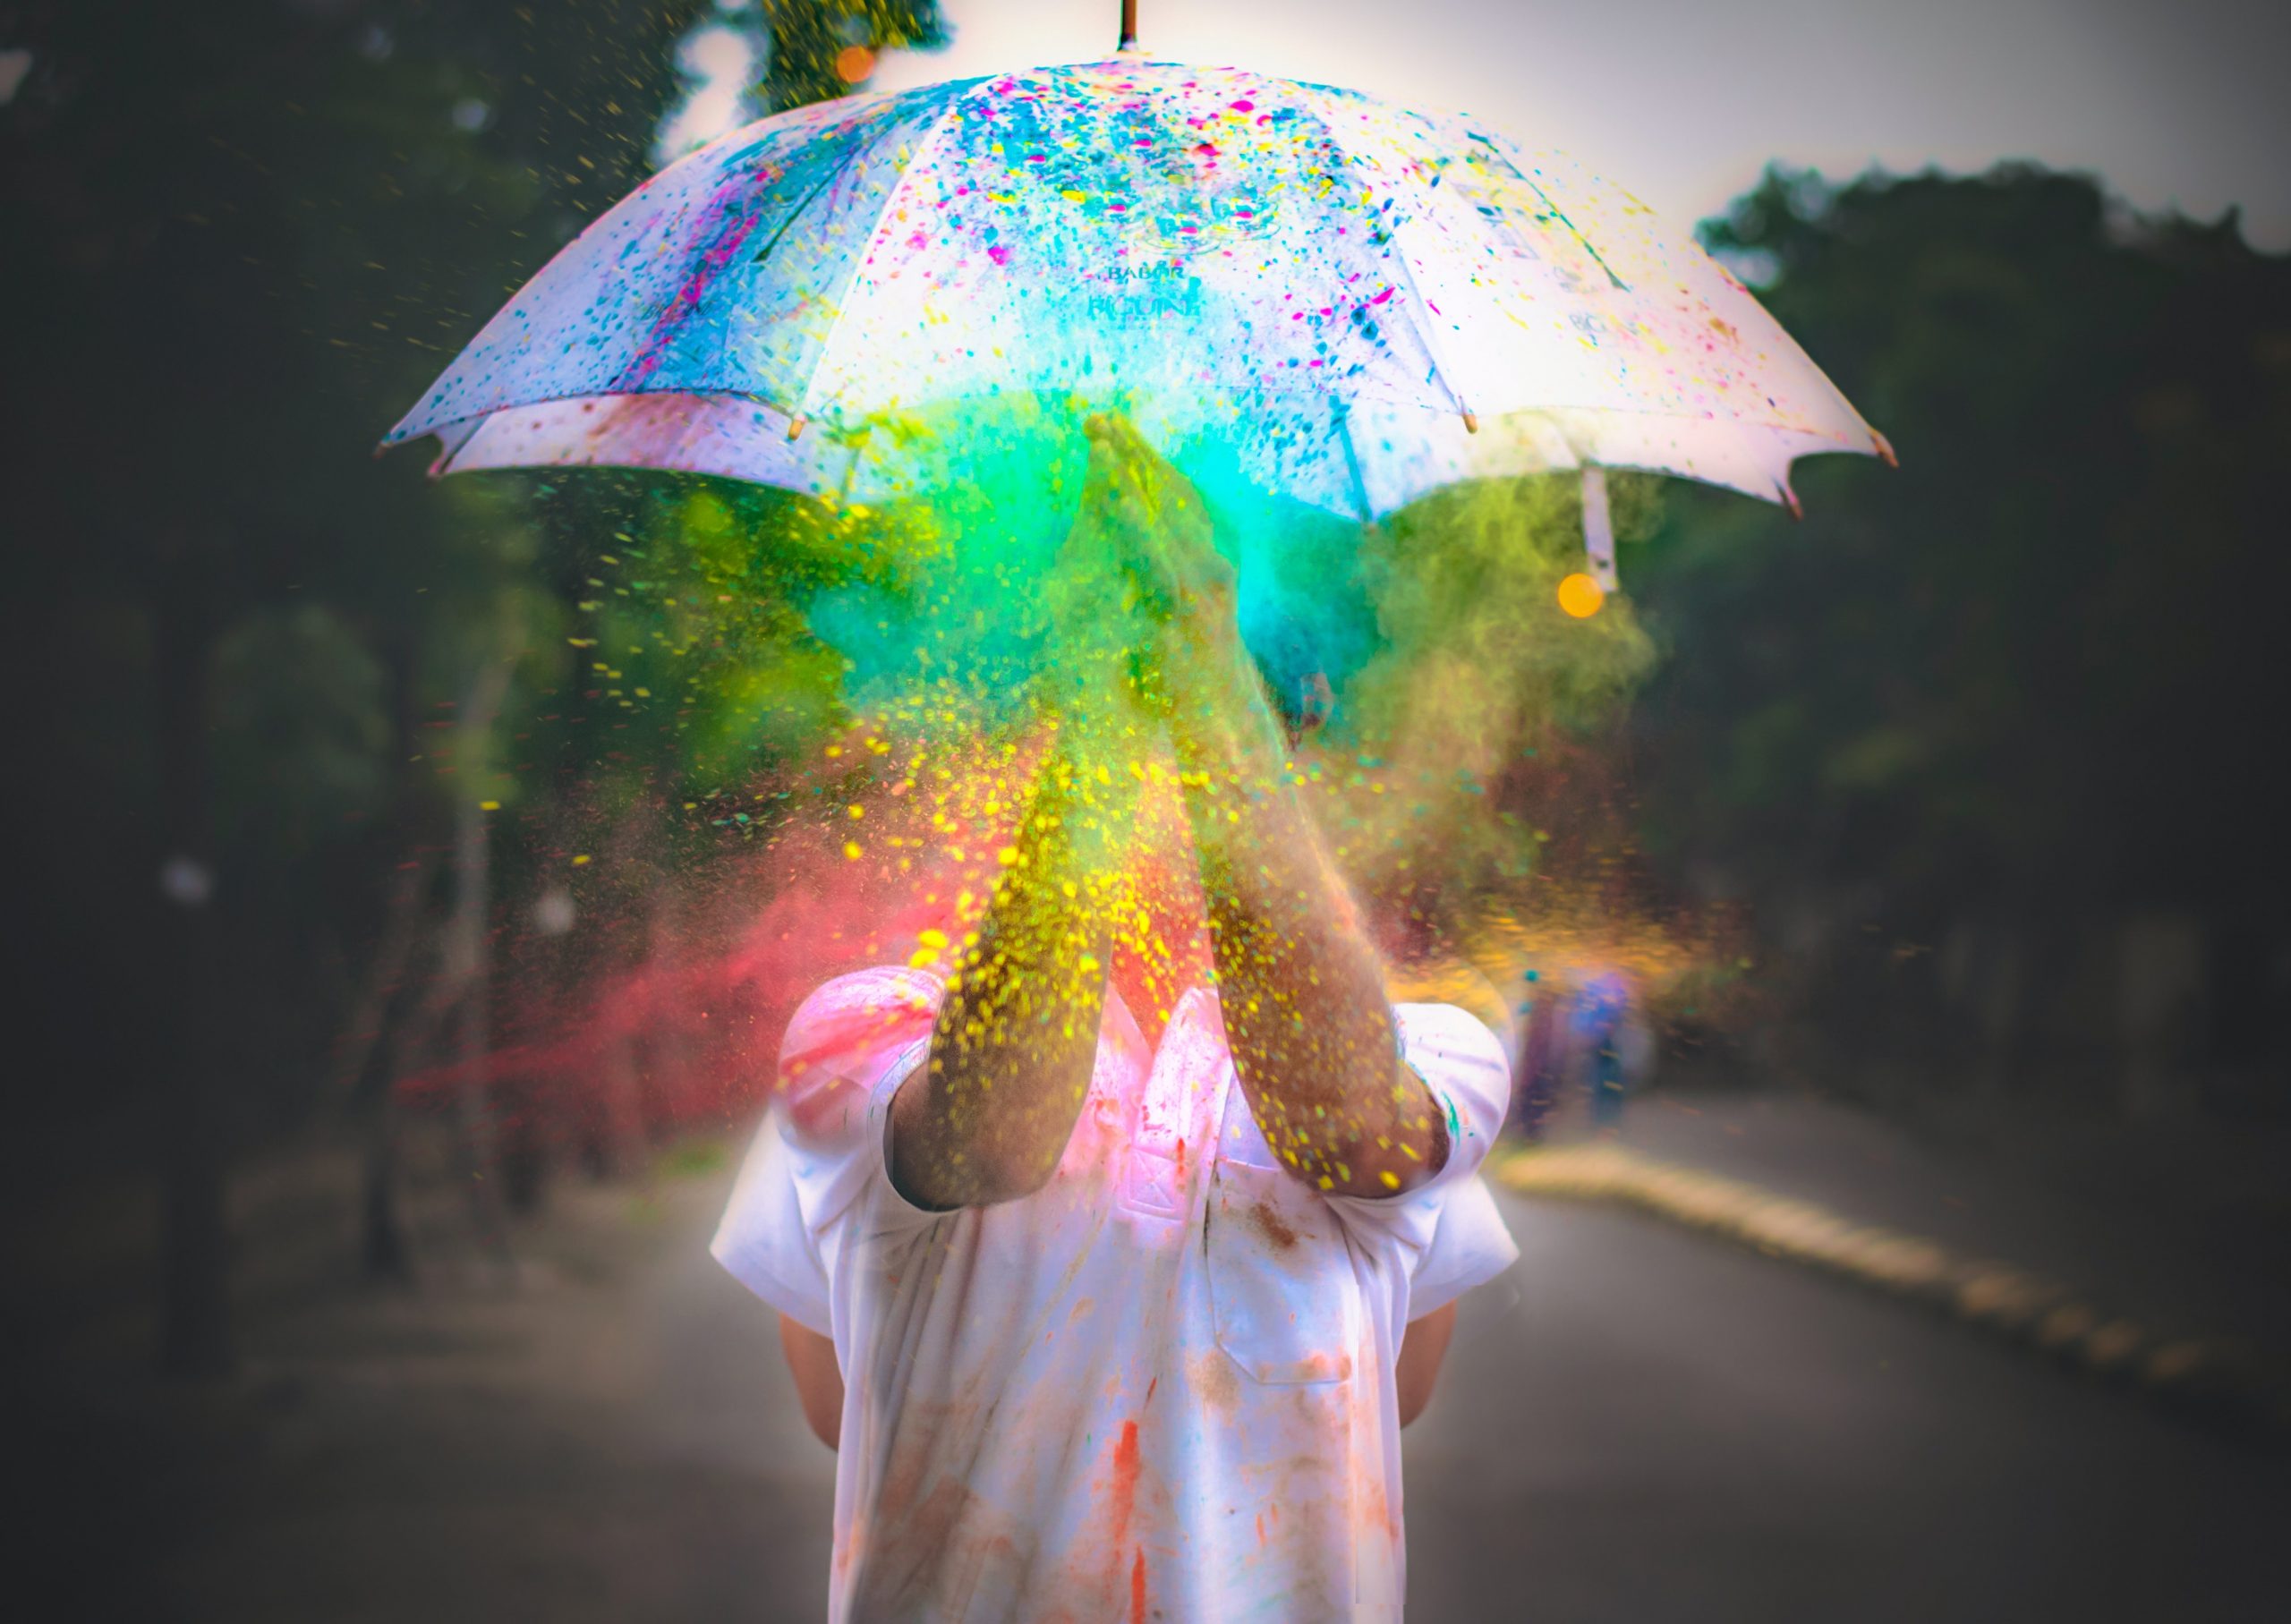 artistic rainbow splash on umbrella